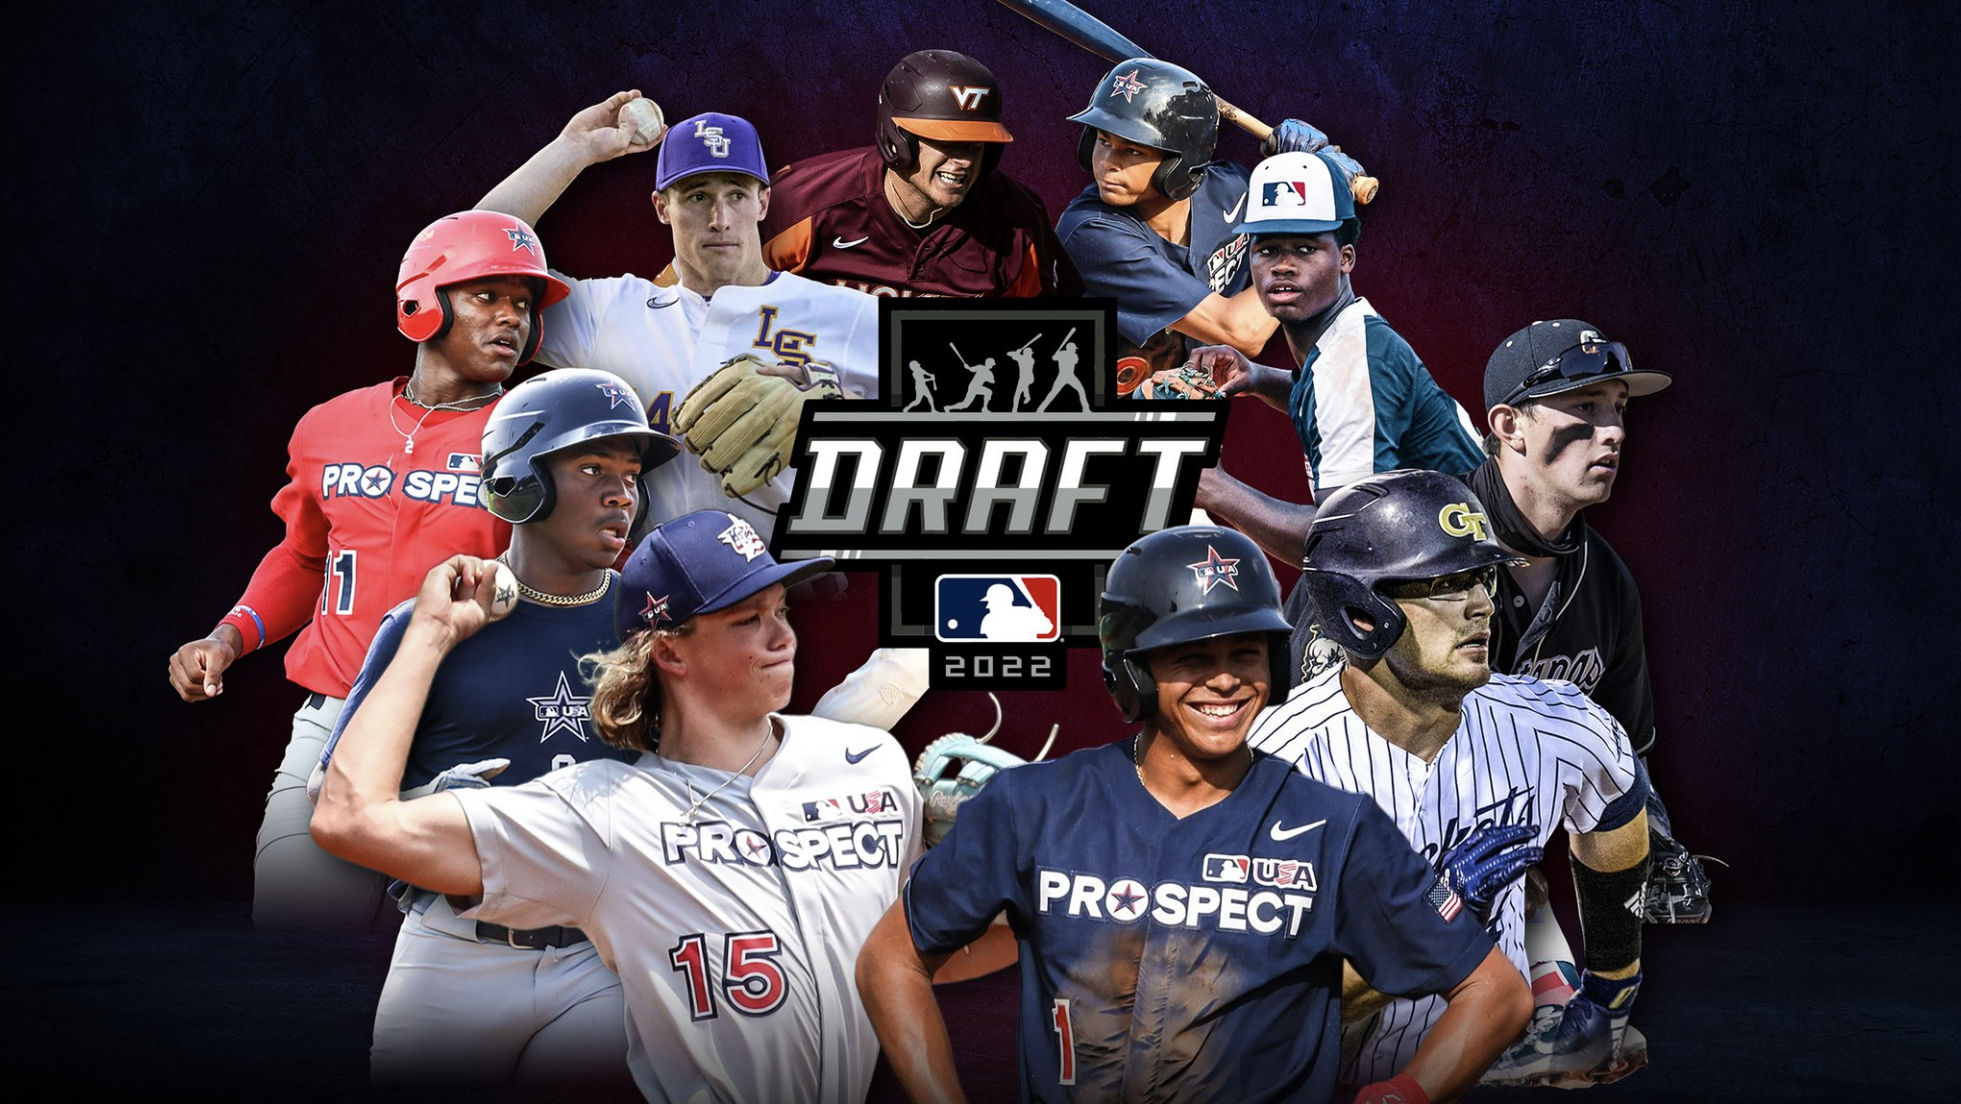 MLB Draft 2022